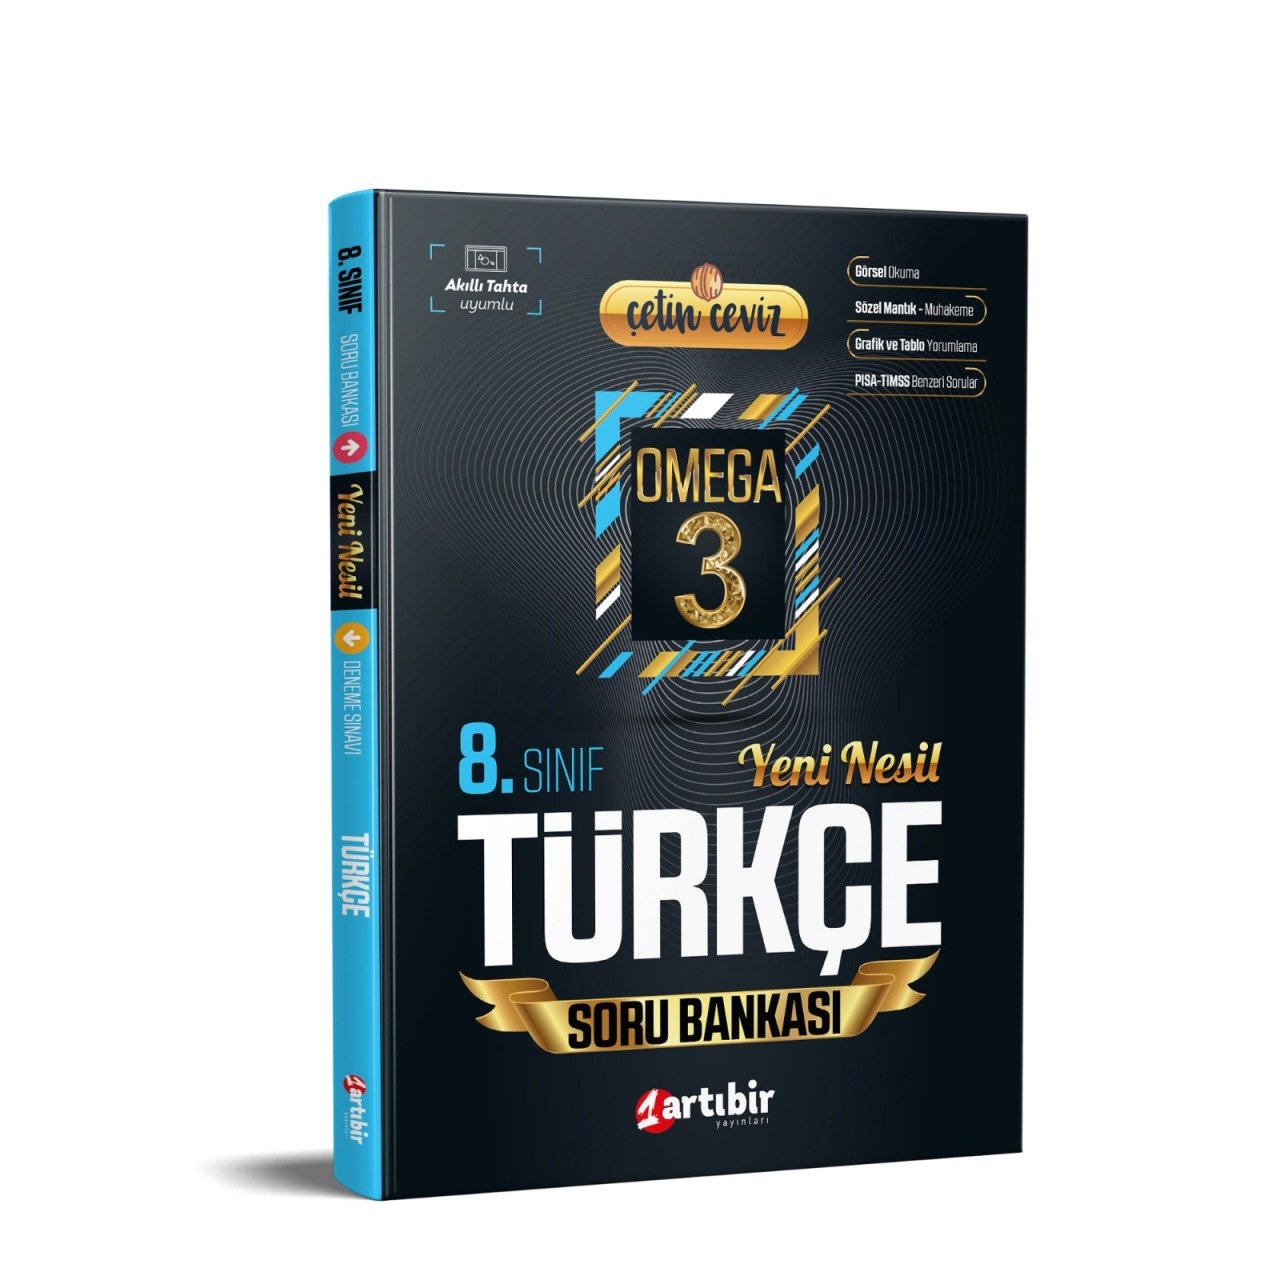 Artıbir Yayınları 8. Sınıf Çetin Ceviz Omega Türkçe Soru Bankası